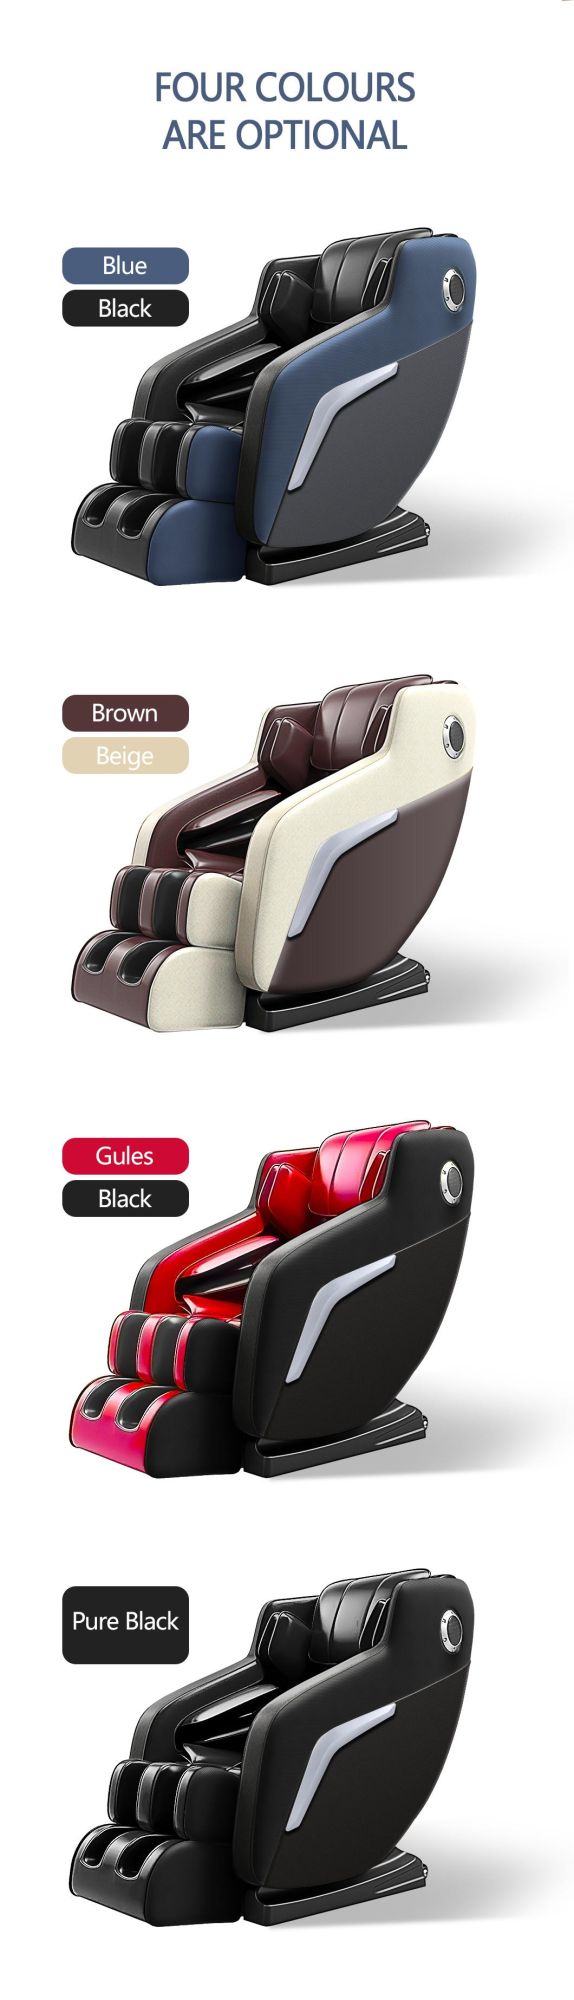 Luxury Cheaper Best 3D Zero Gavity Full Body Massage Equipment